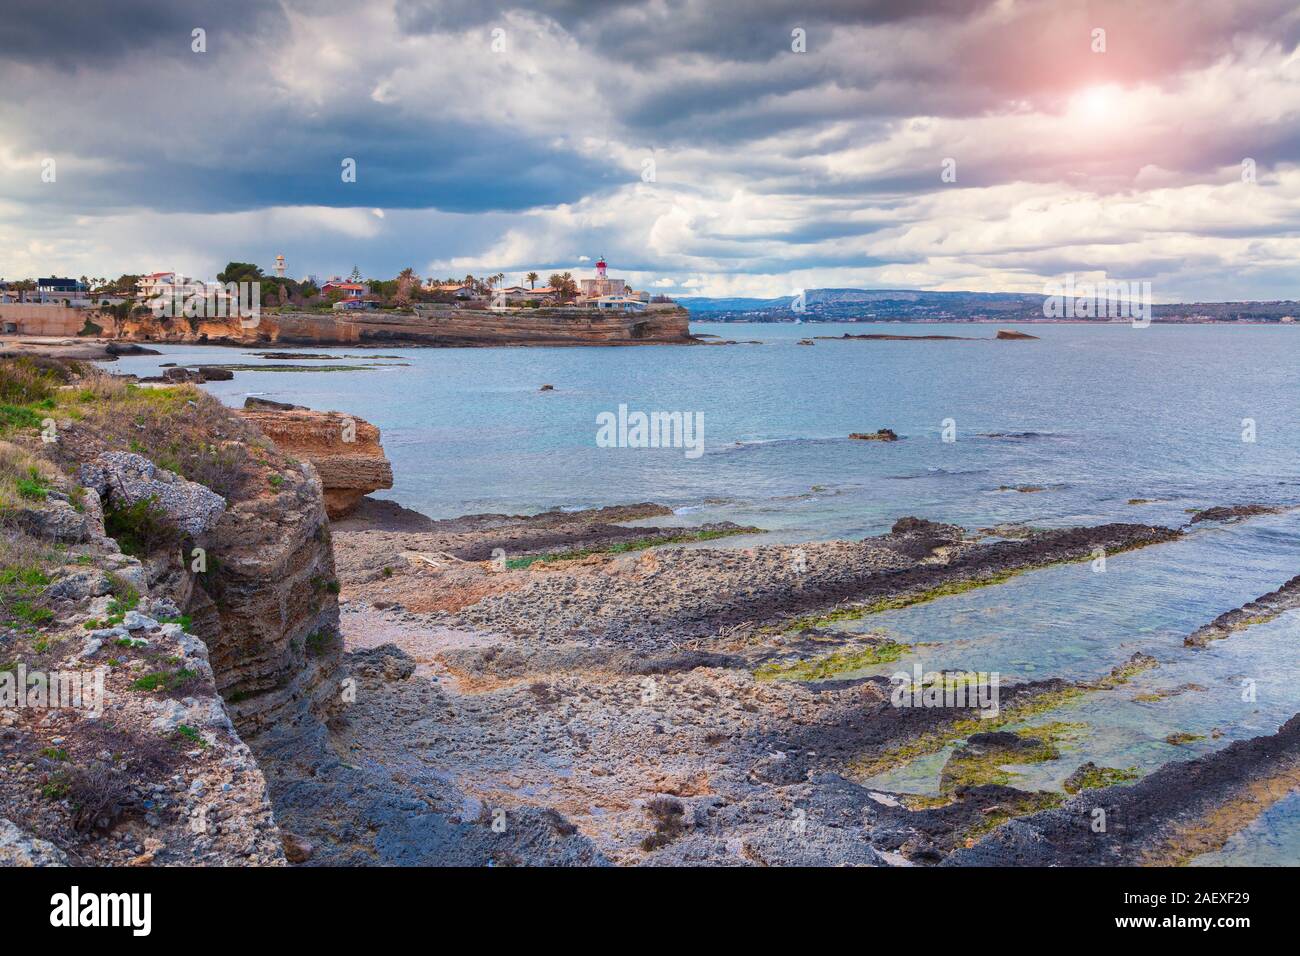 Antica città di Siracusa. Vista dall'Area Marina protetta del Plemmirio. Sicilia in Sicilia, l'Italia, il Mar Tirreno, l'Europa. Foto Stock